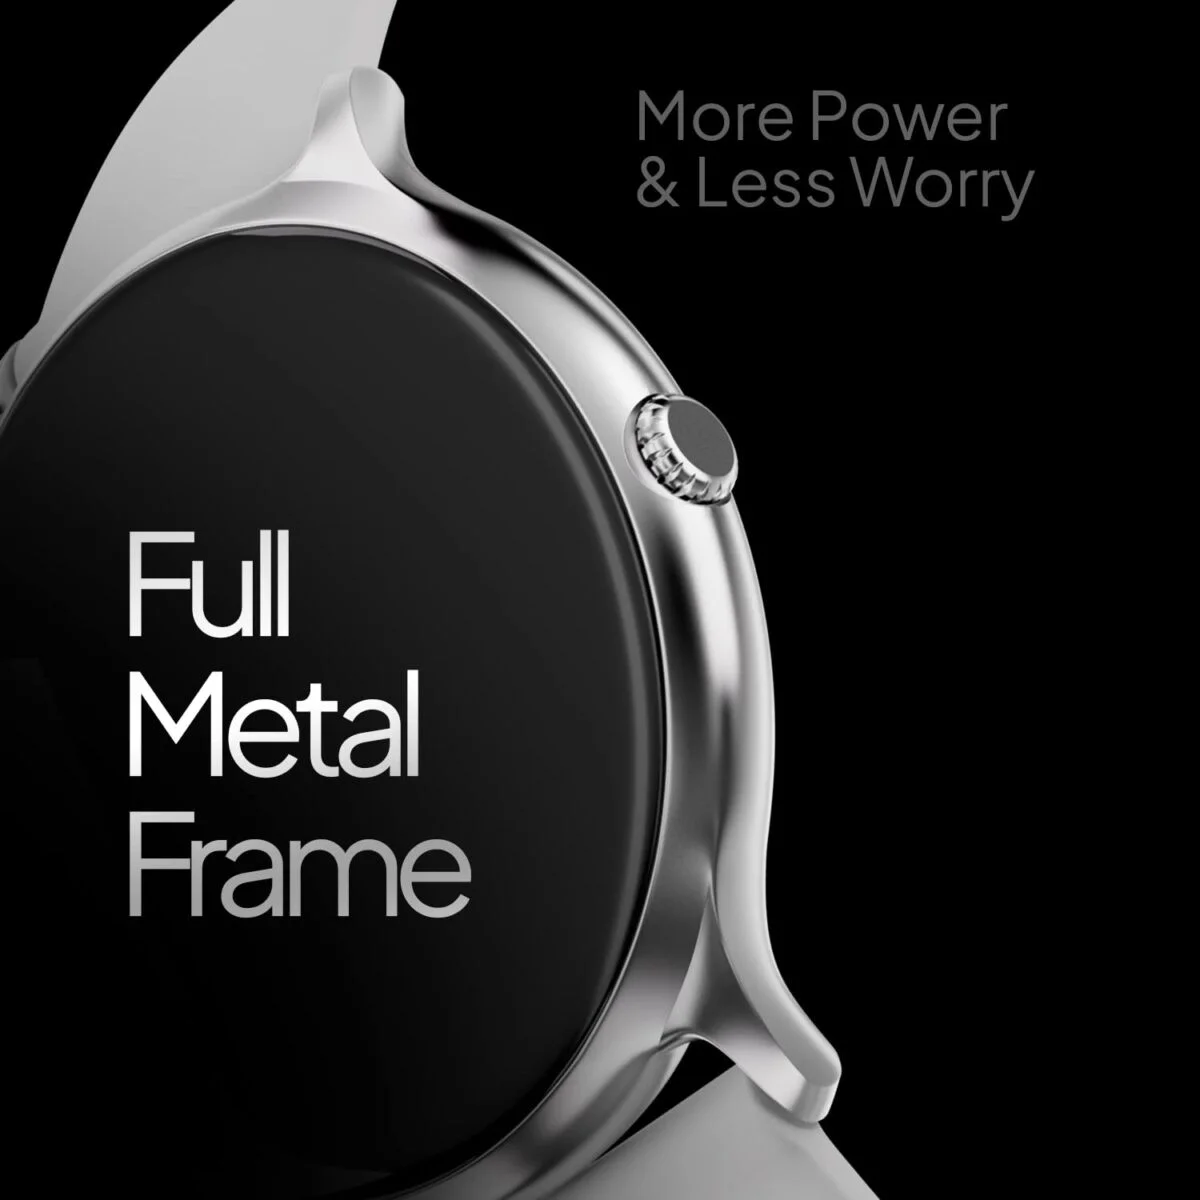 Fire boltt phoenix pro smart watch silver grey 1 fire-boltt phoenix pro smart watch